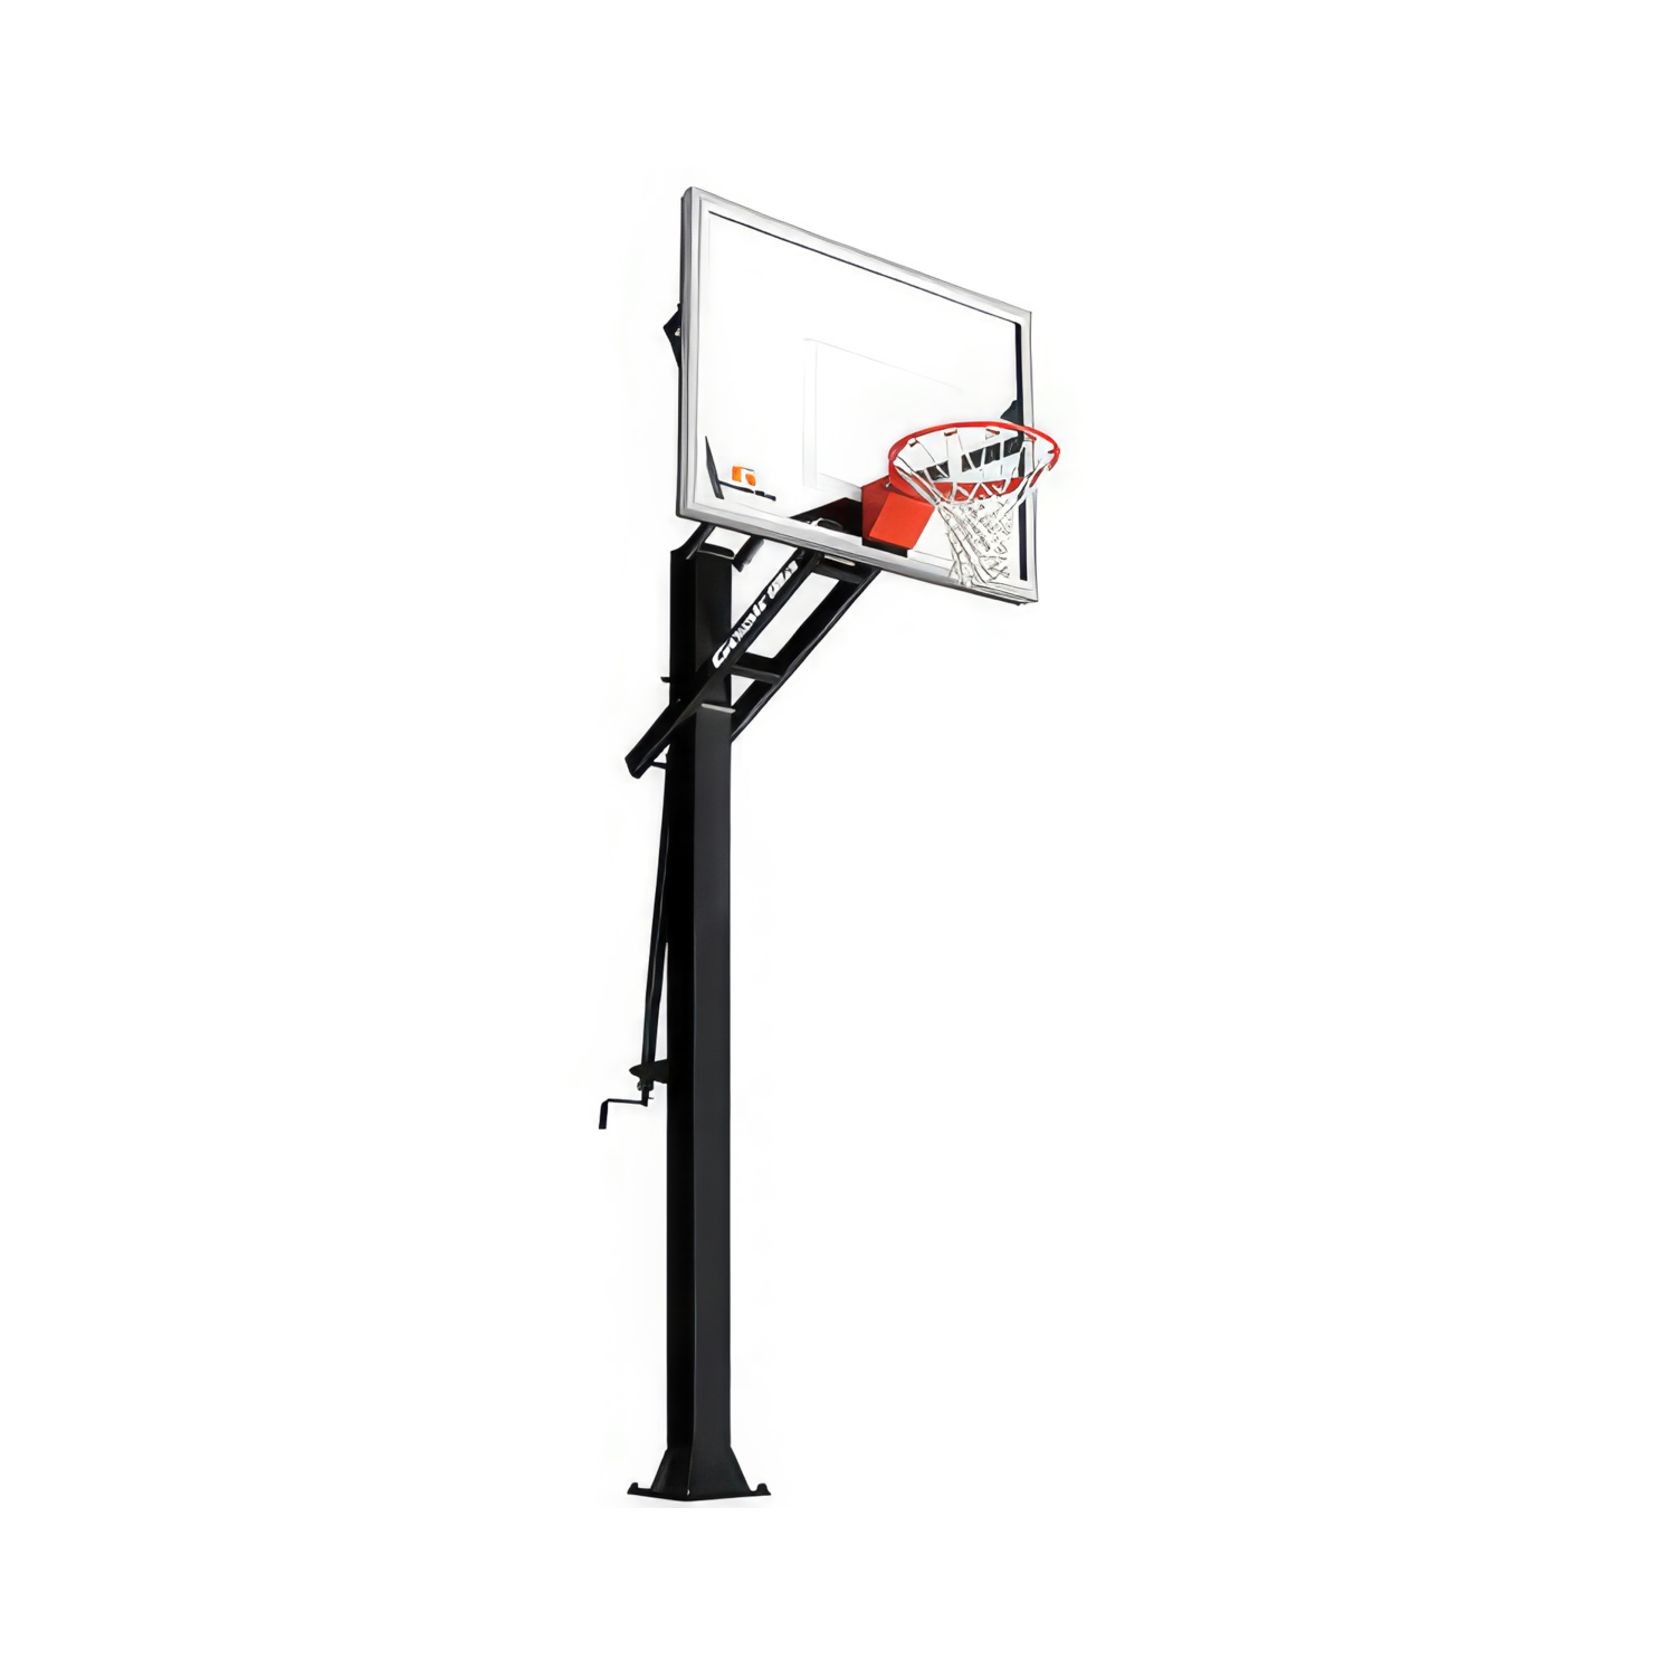 GS54C 54" In-Ground Basketball Hoop gallery detail image